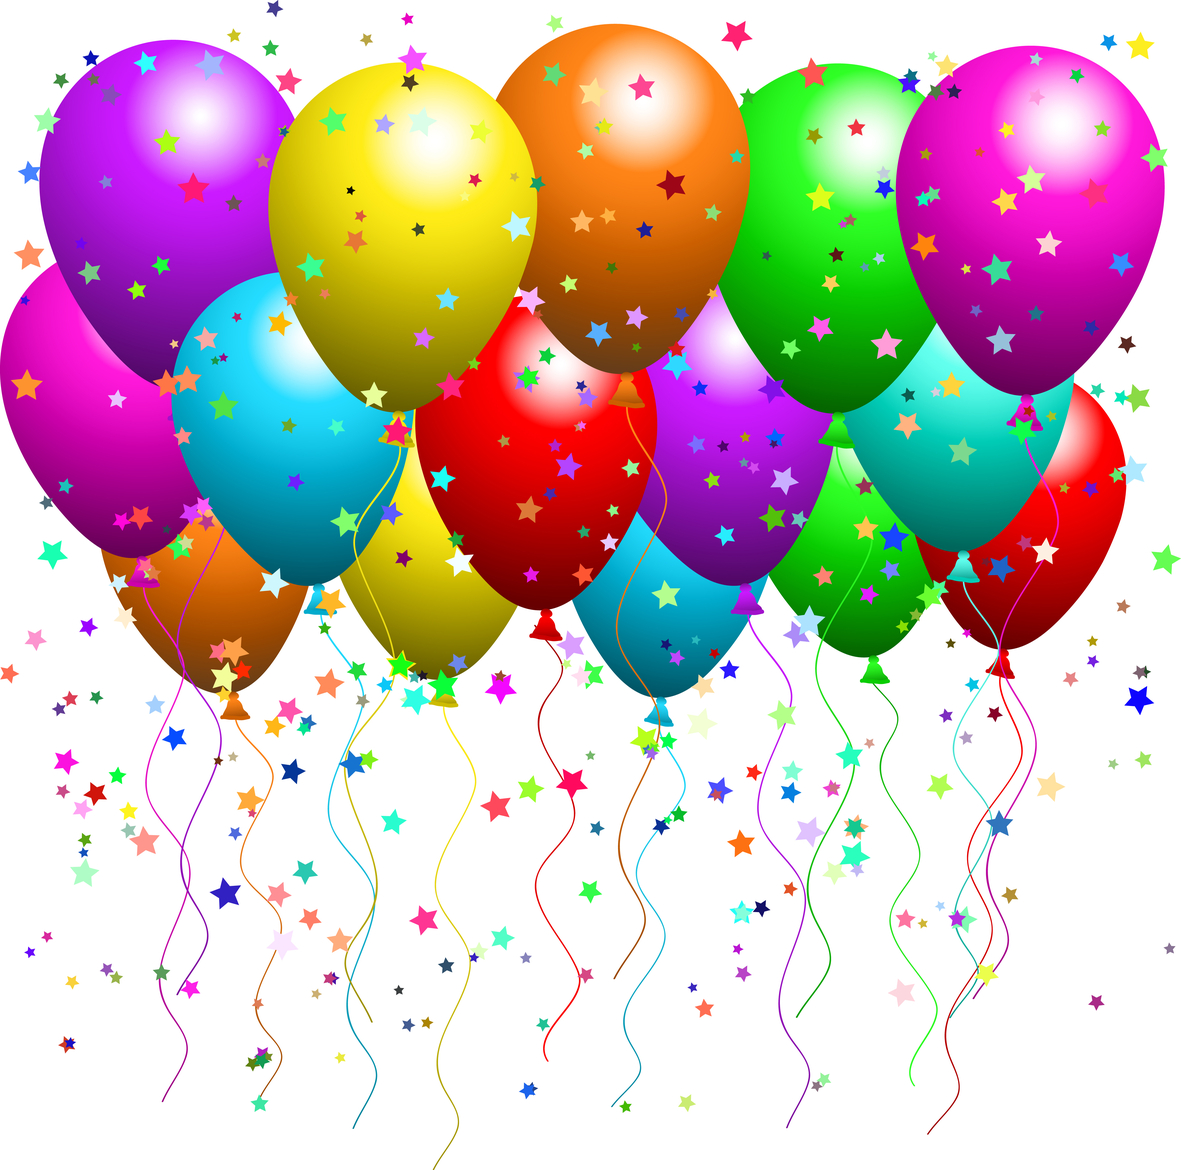 Balloons-celebration.jpg